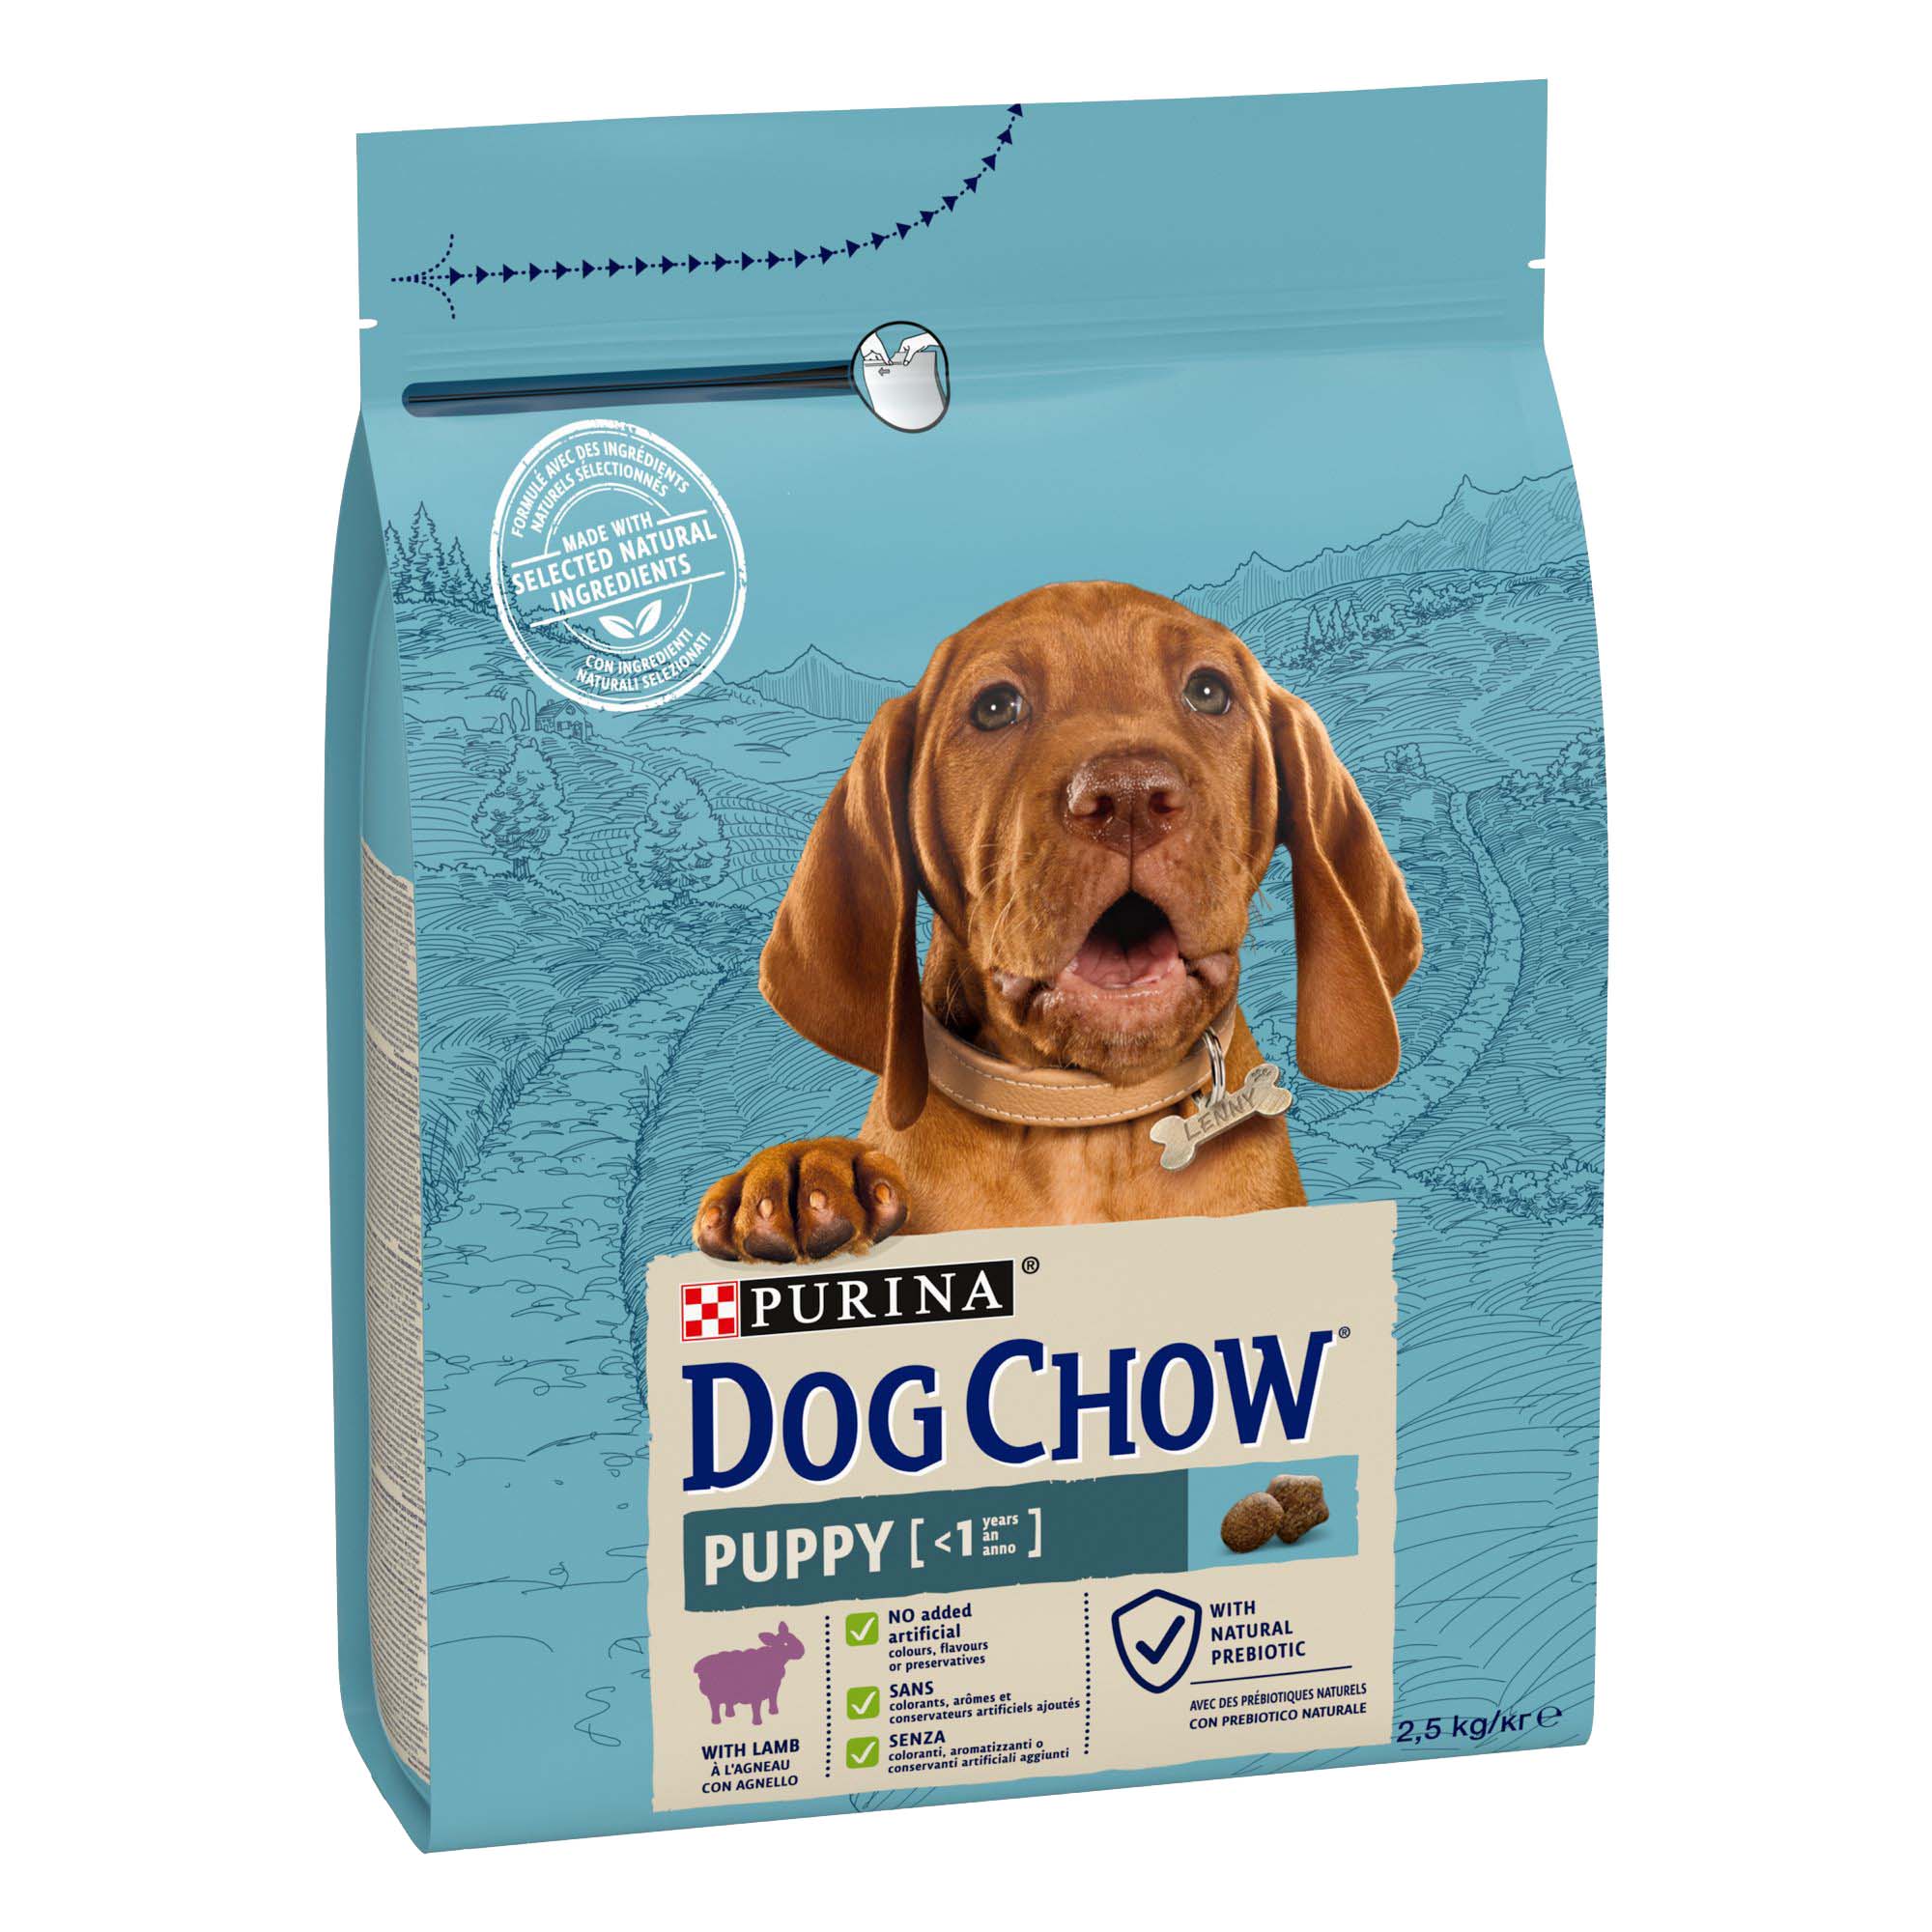 Dog Chow kutya szárazeledel puppy bárány 2,5kg